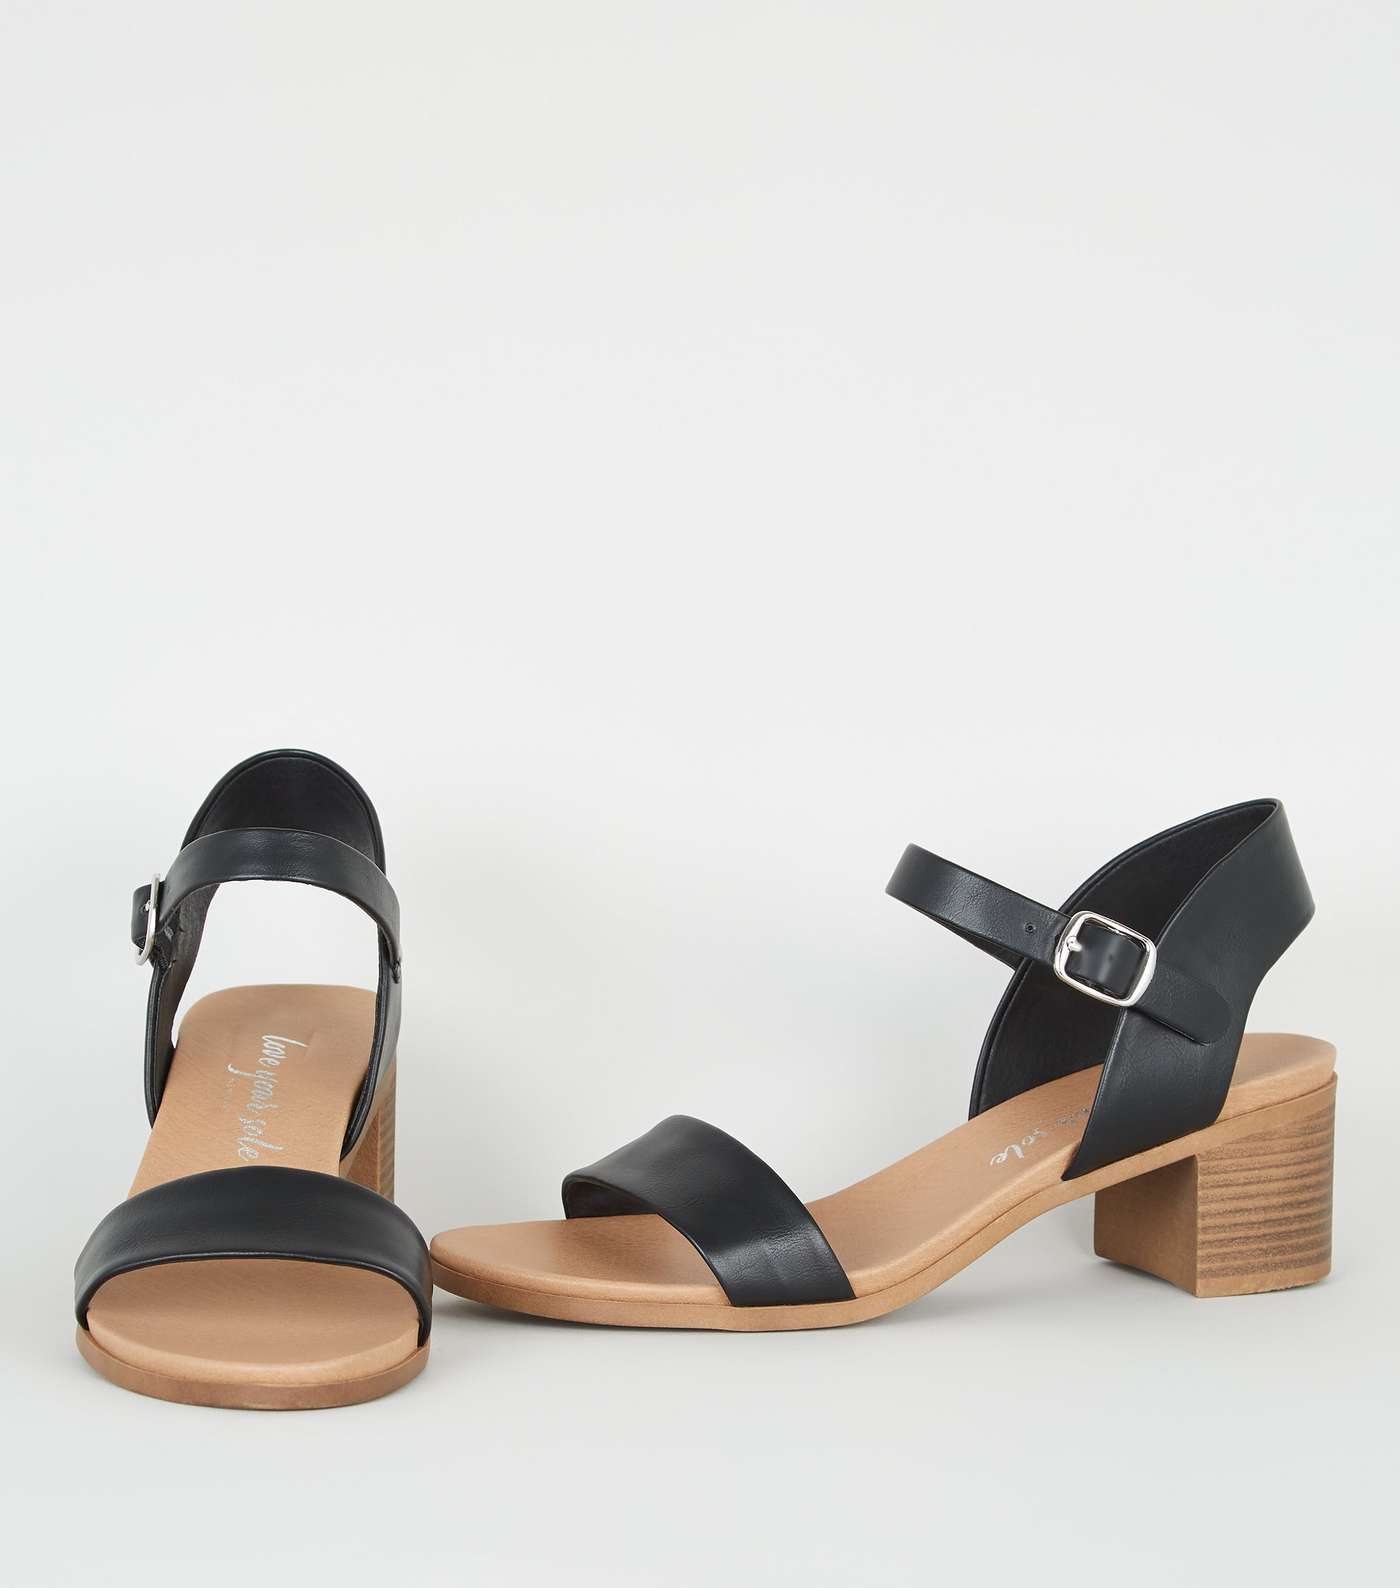 Black Leather-Look Low Block Heel Sandals Image 3